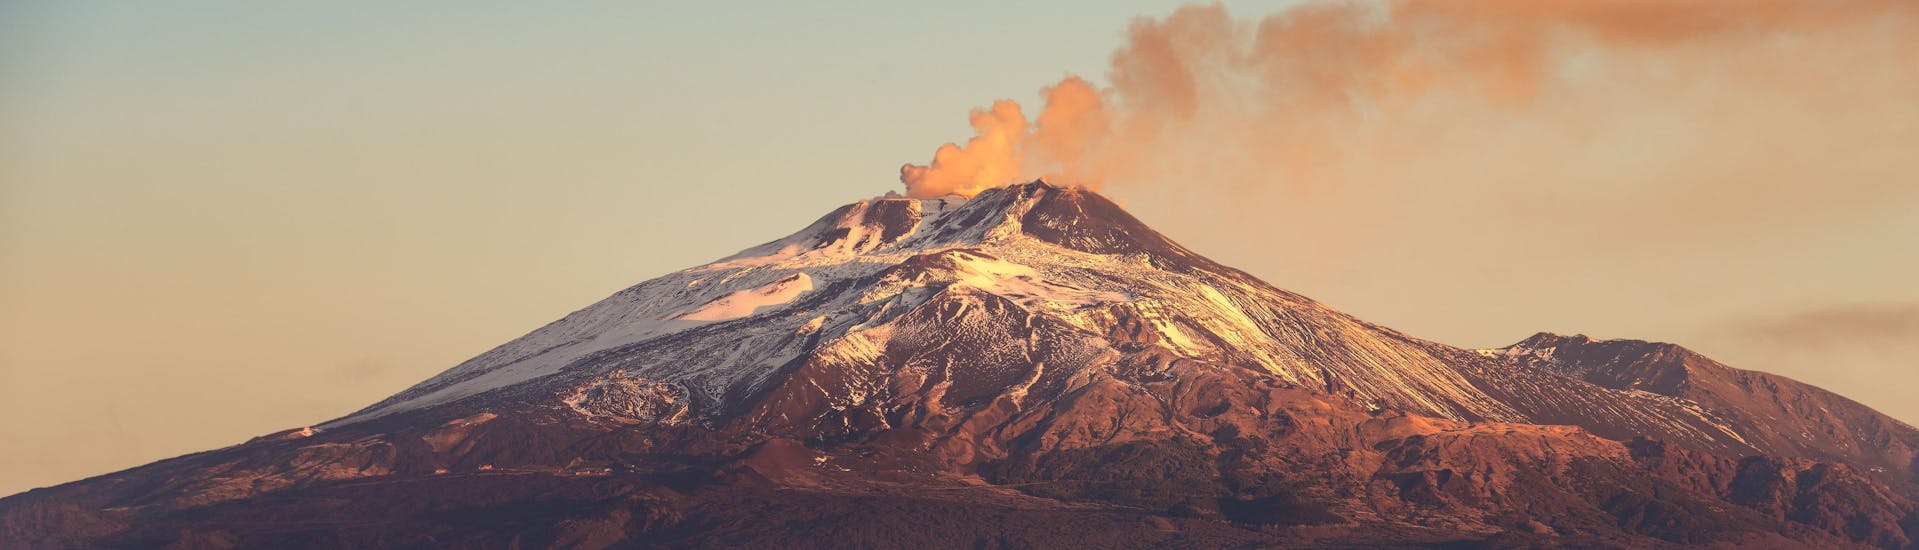 Vista sobre el monte Etna, que es un destino popular para hacer excursiones al volcán y hacer senderismo.